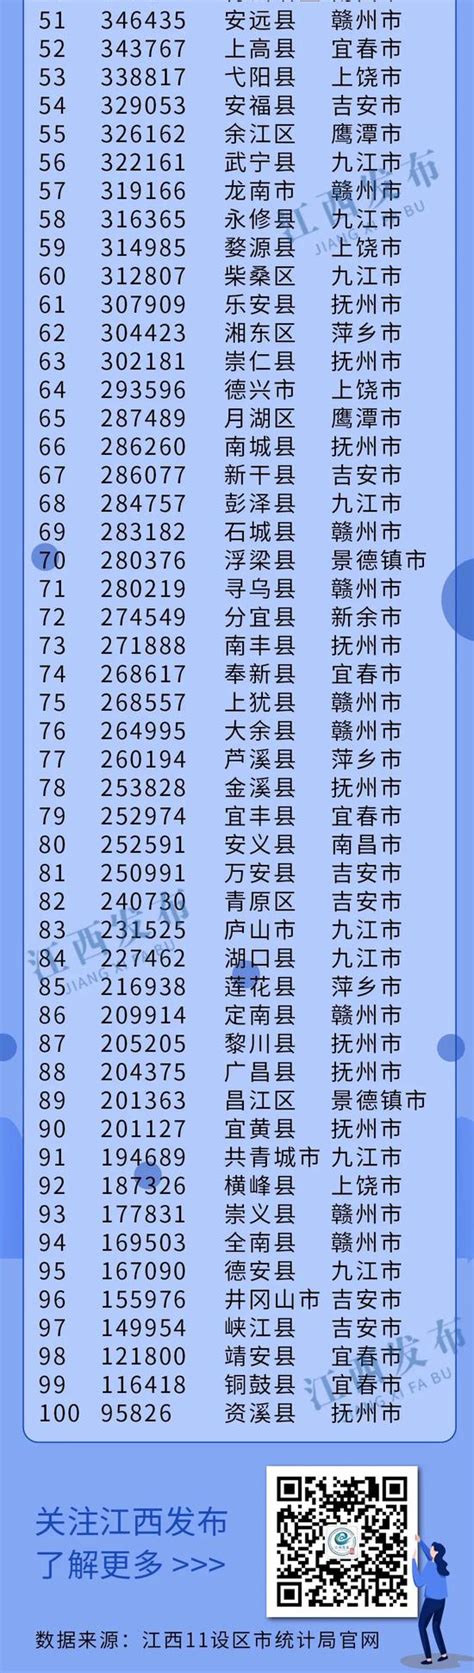 江西省各县人口排名_各县级市人口数量排行